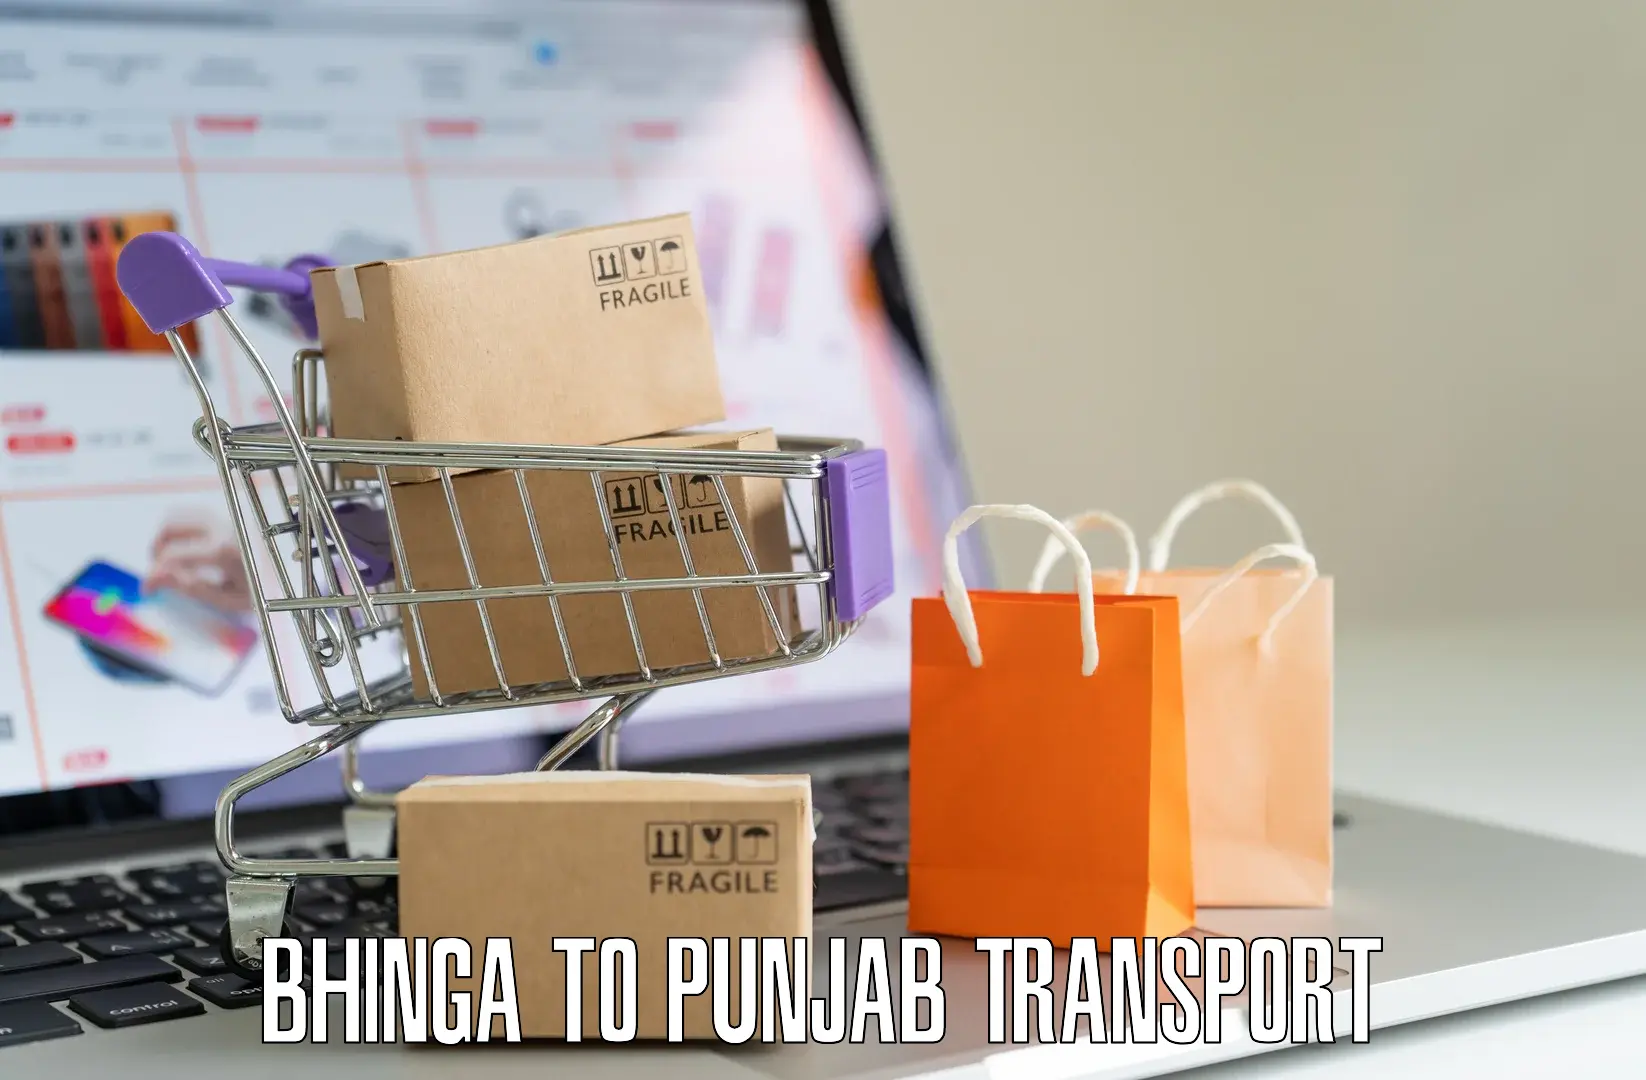 Interstate transport services Bhinga to Punjab